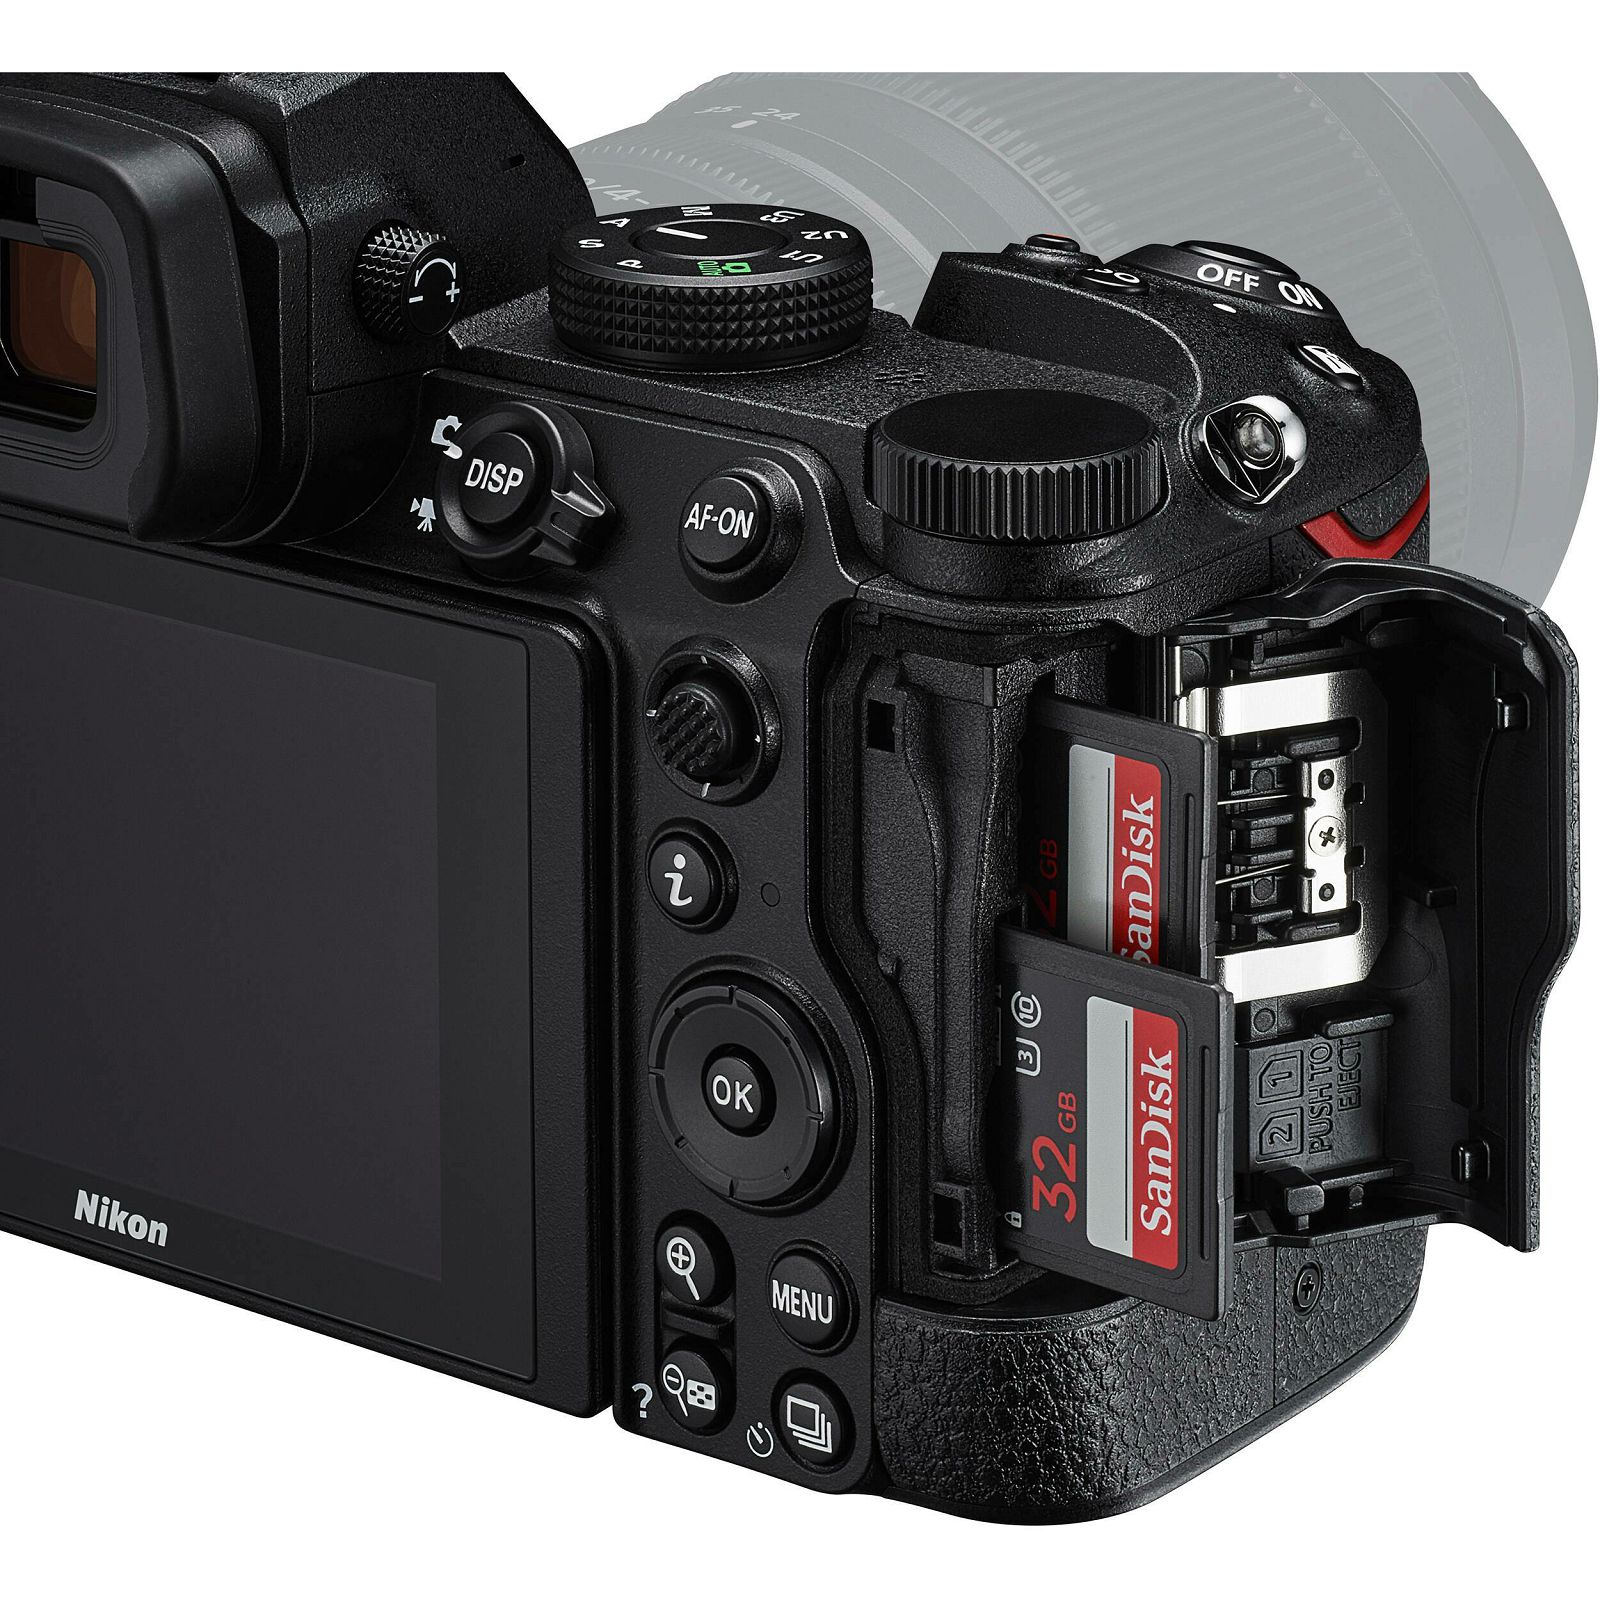 Nikon Z5 + Z 24-200mm f/4-6.3 VR Kit fotoaparat s objektivom (VOA040K004)